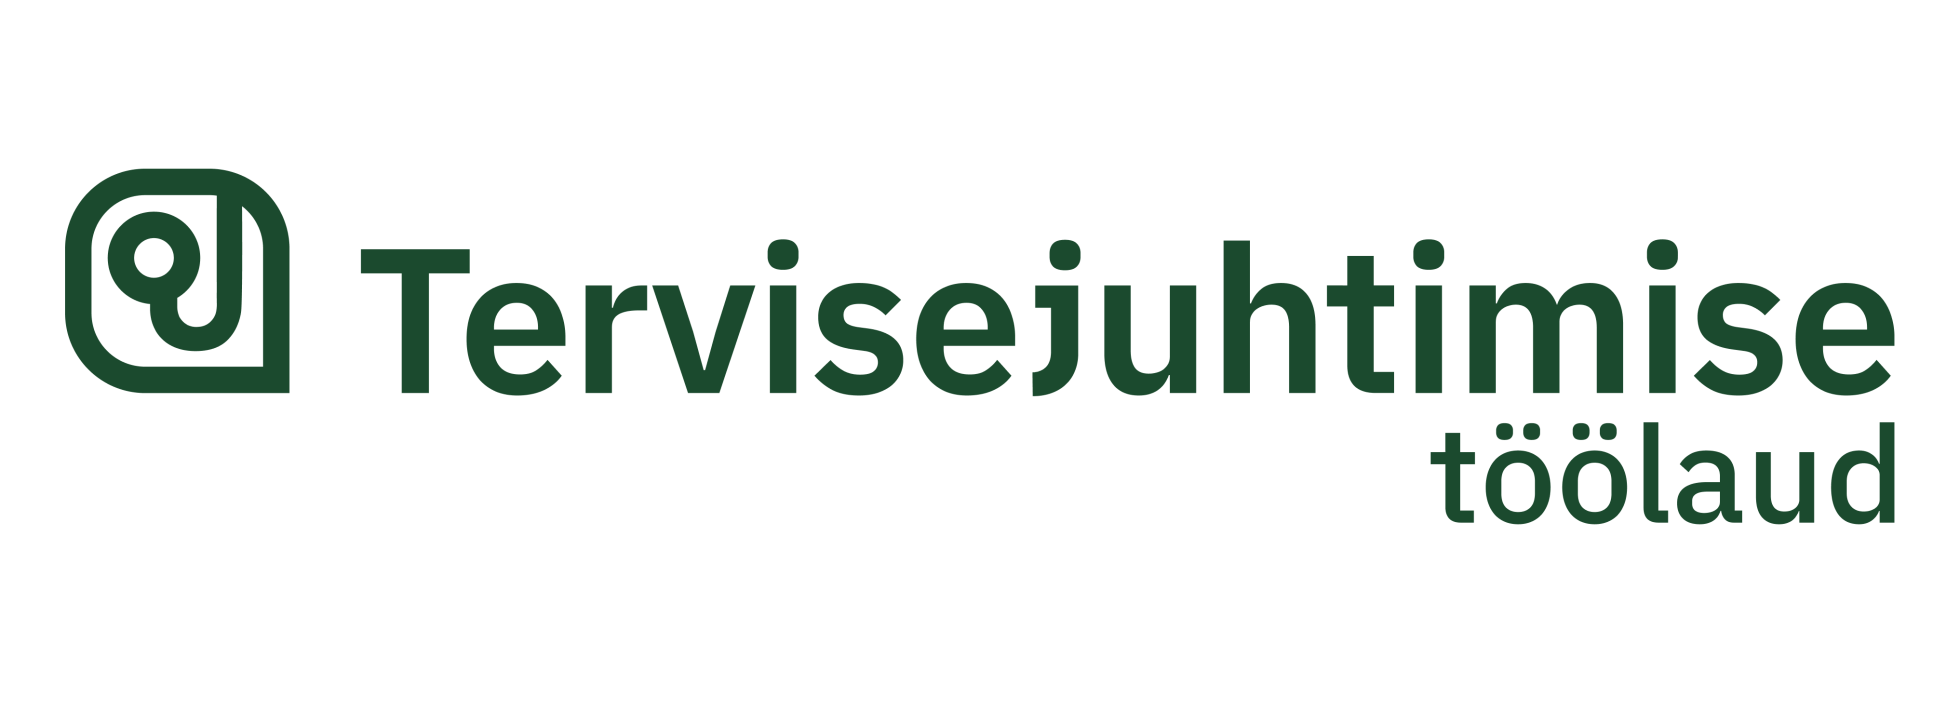 Tervisejuhtimise töölaua logo rohelises kirjas stetoskoobist ja jutumullist inspireeritud logoga.